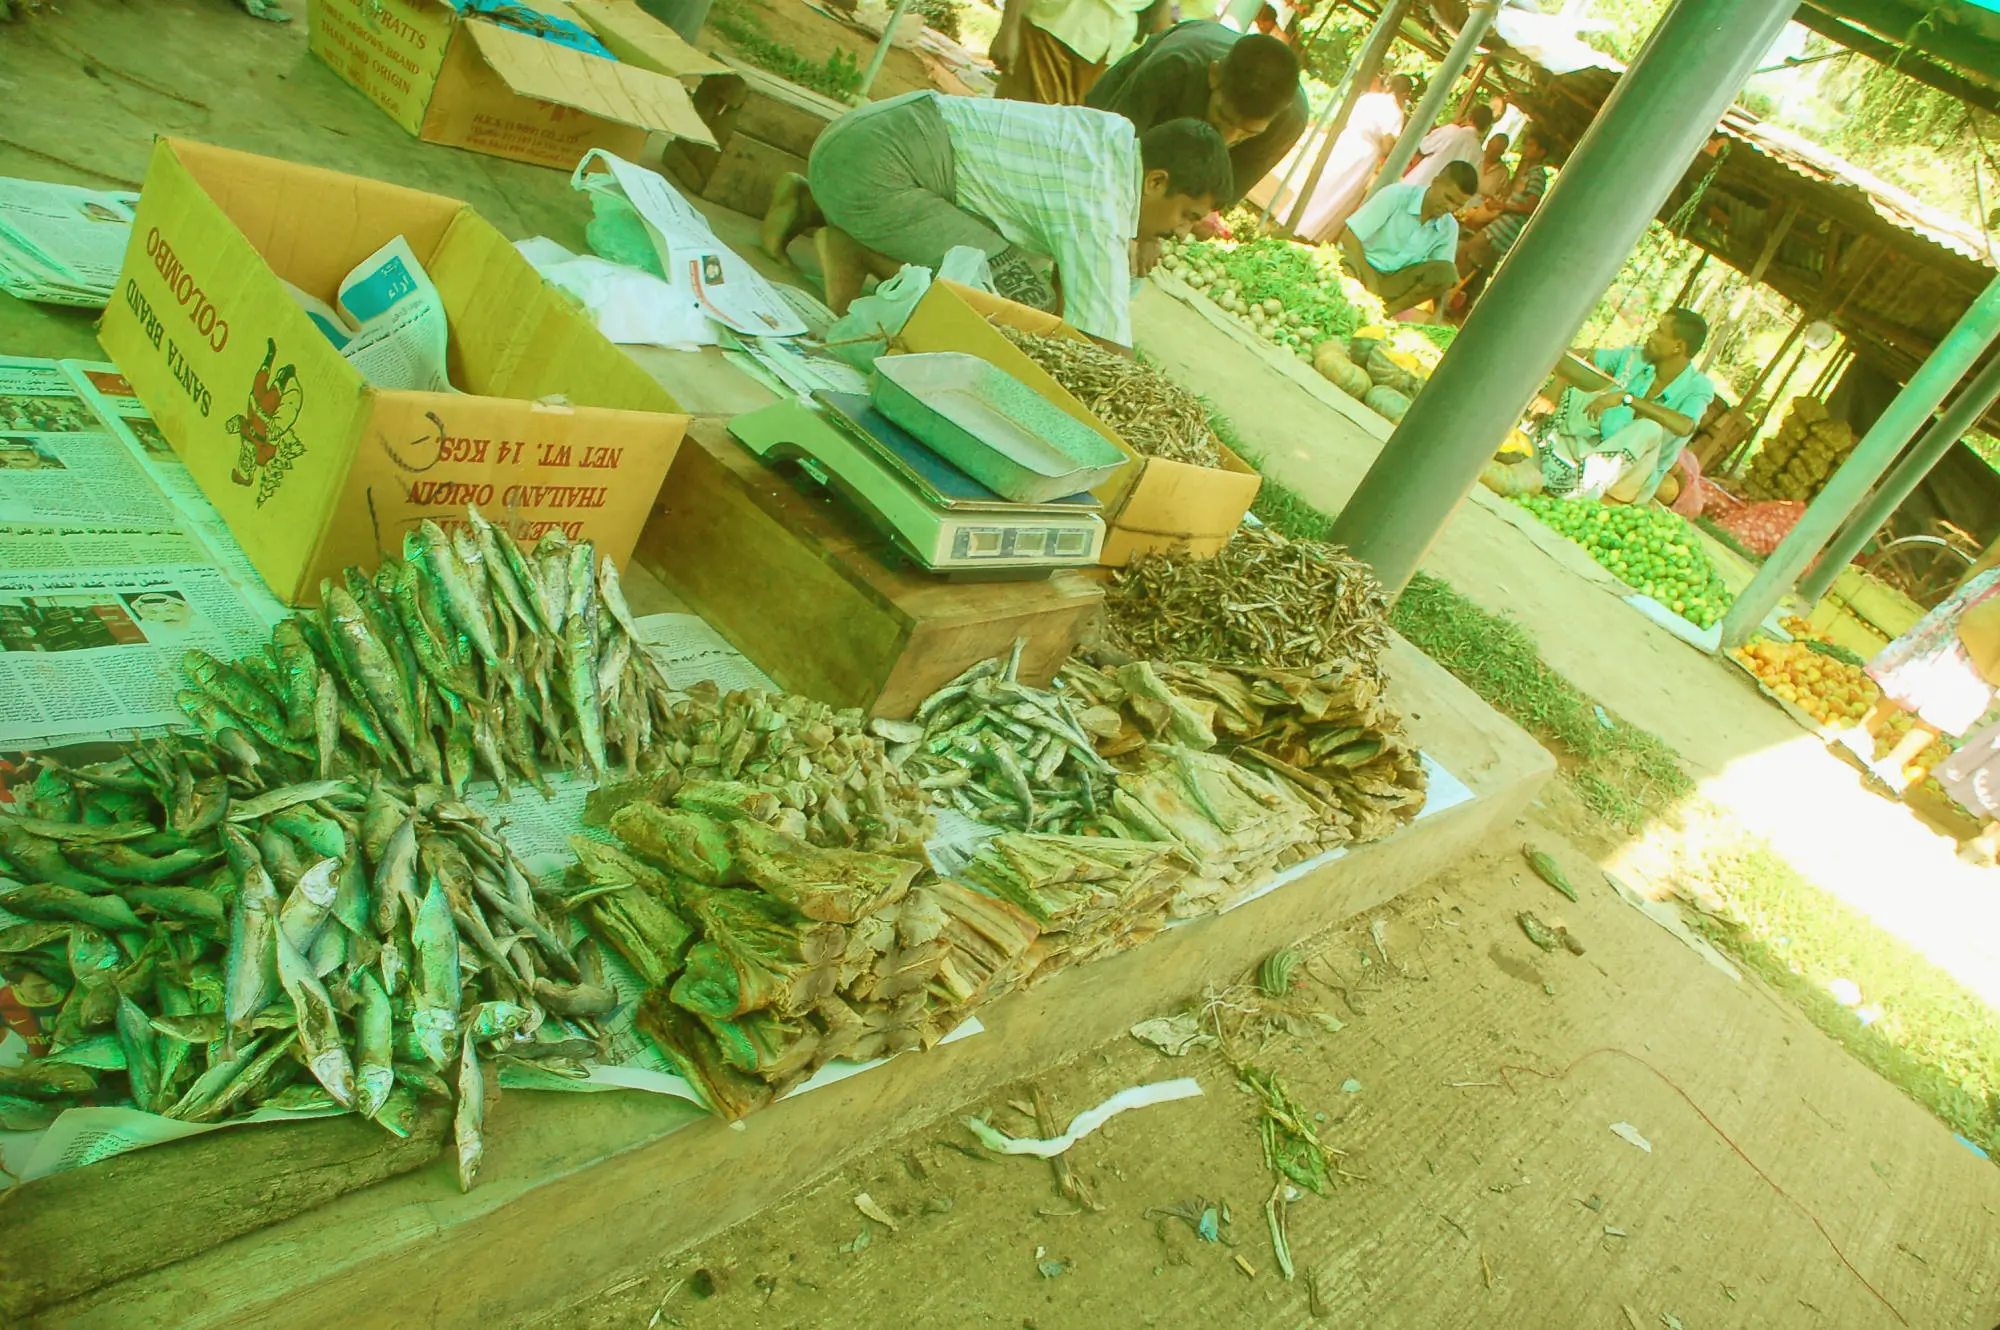 Market, Aluthgama